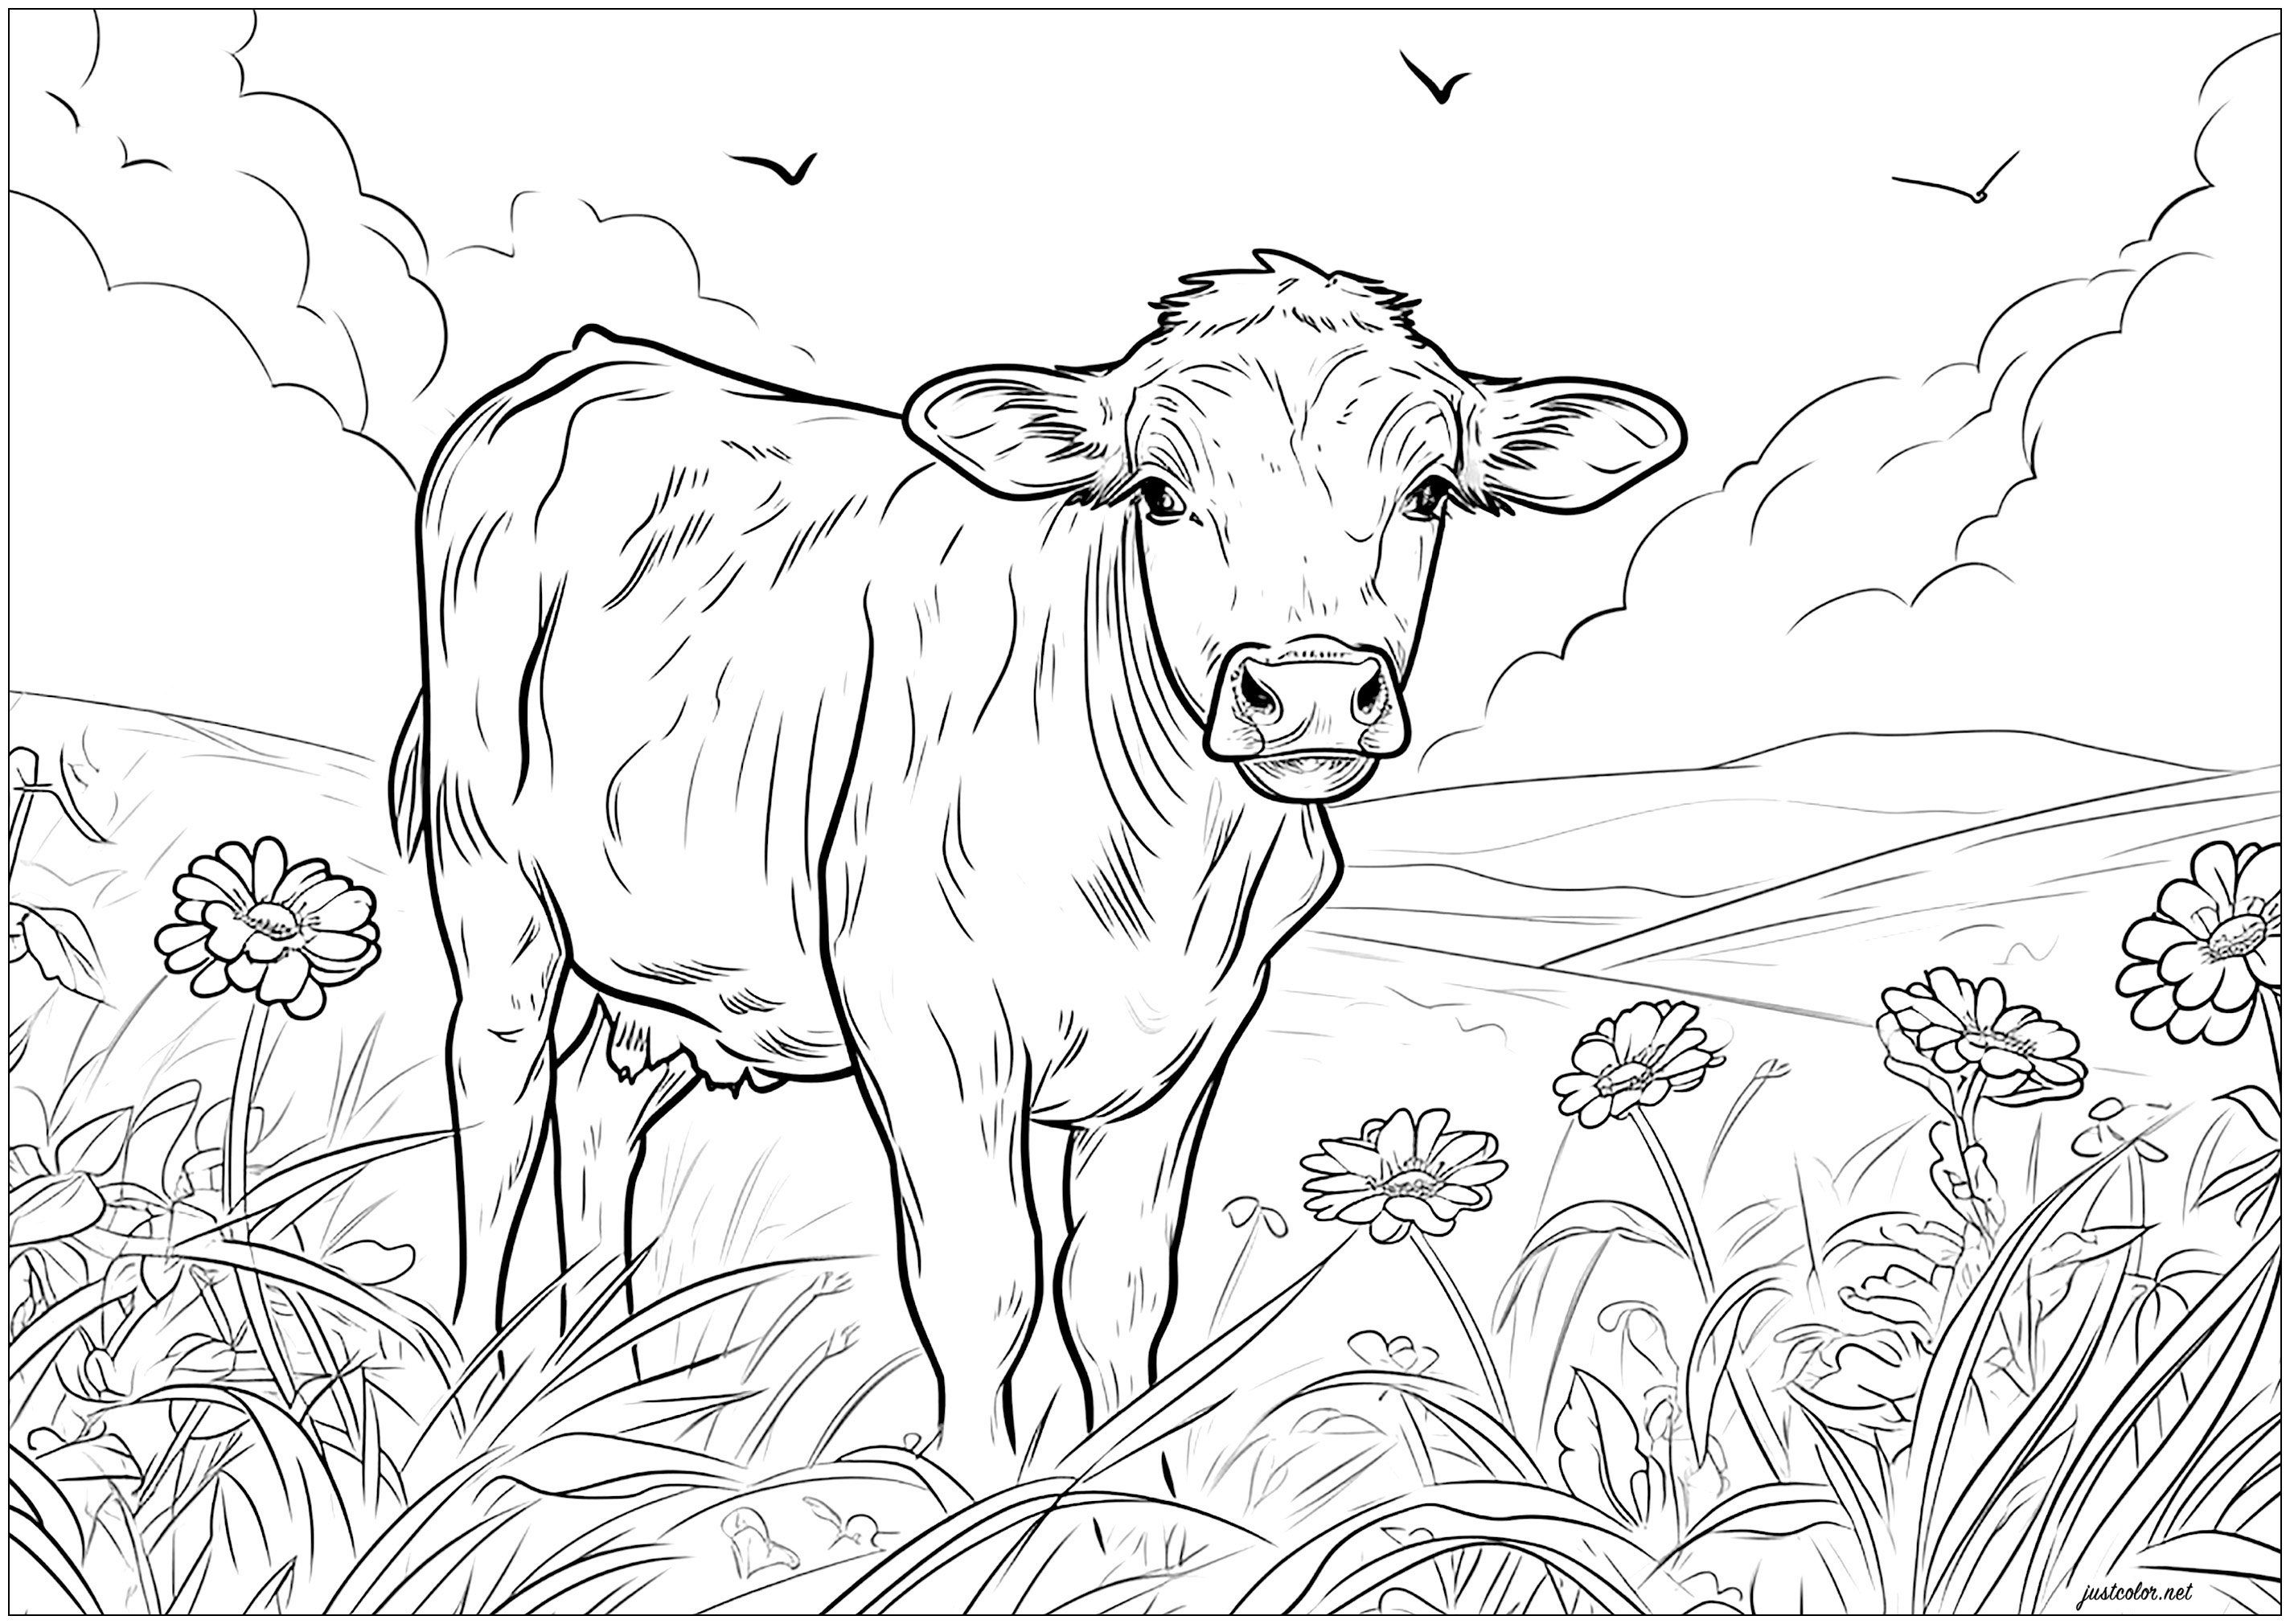 Mucca in un campo - 2